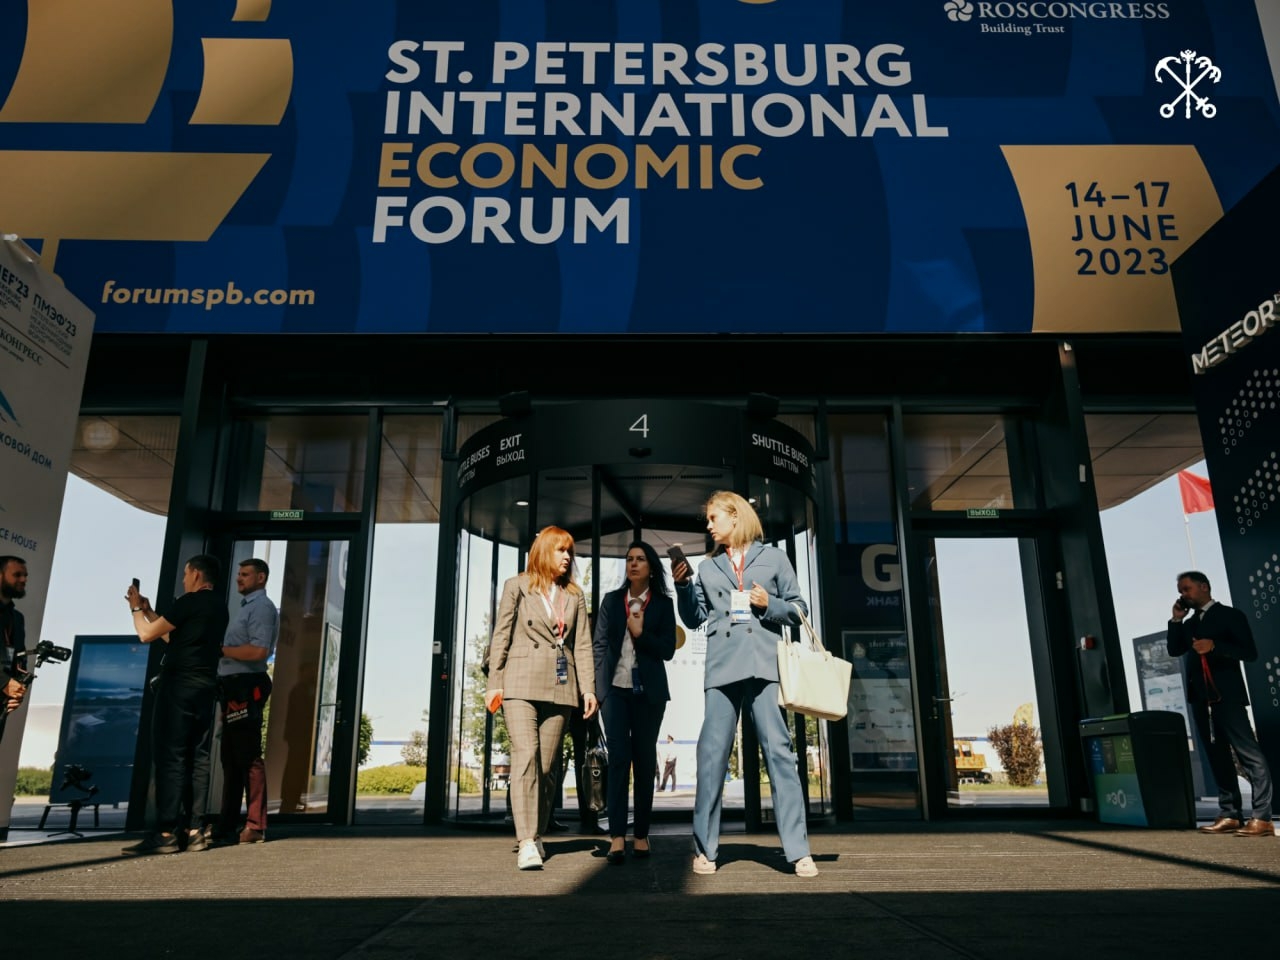 Делегация Ивановской области примет участие в Петербургском международном экономическом форуме